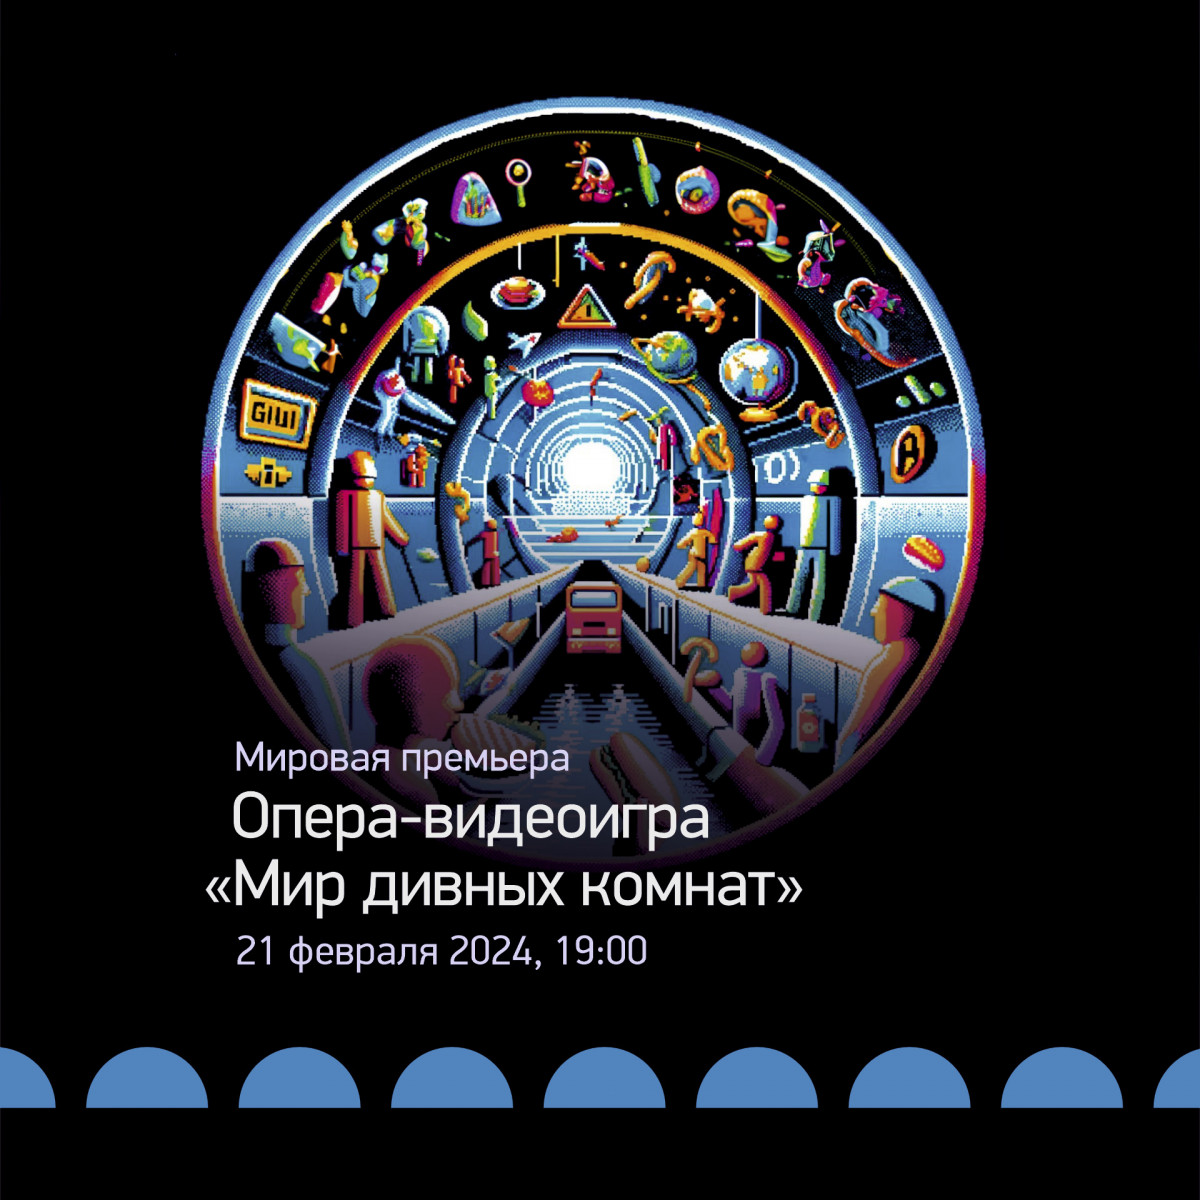 Мировая премьера оперы-видеоигры «Мир дивных комнат» пройдет в нижегородском Арсенале